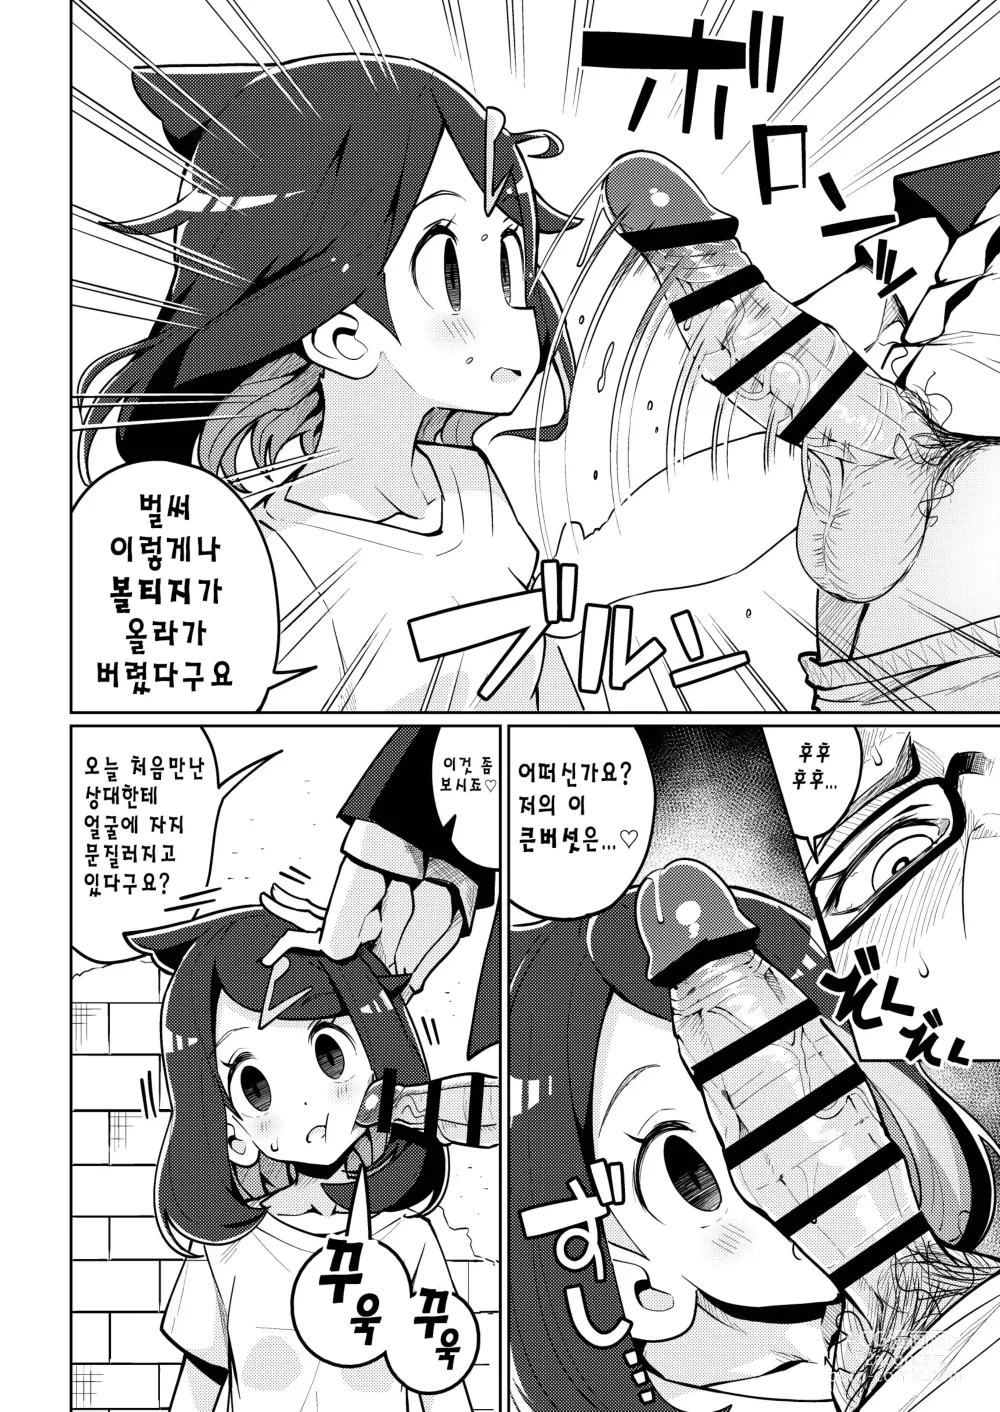 Page 5 of doujinshi 사이코파워라는건 대체 뭐죠?